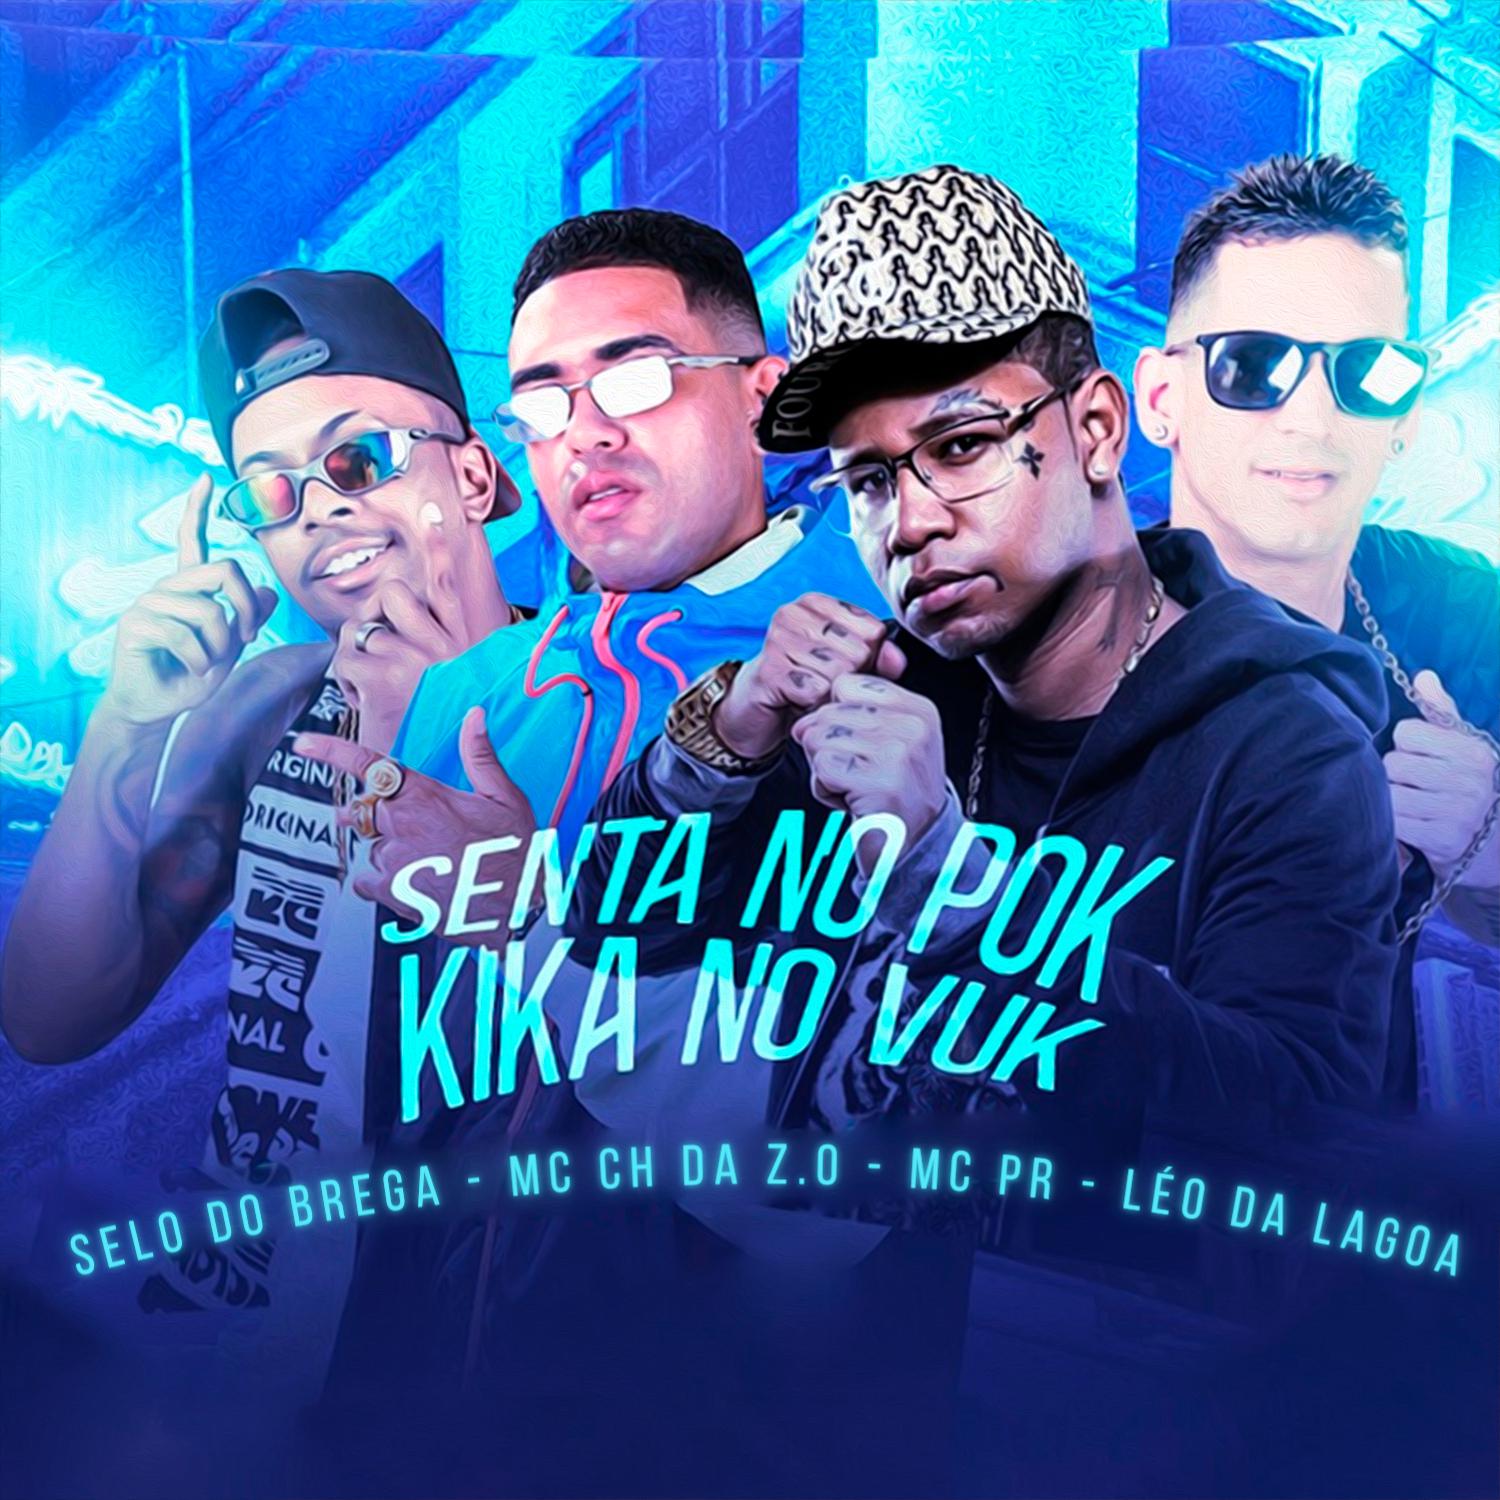 Mc Ch da Z.O - Senta no Pok Kika no Vuk (feat. MC PR)